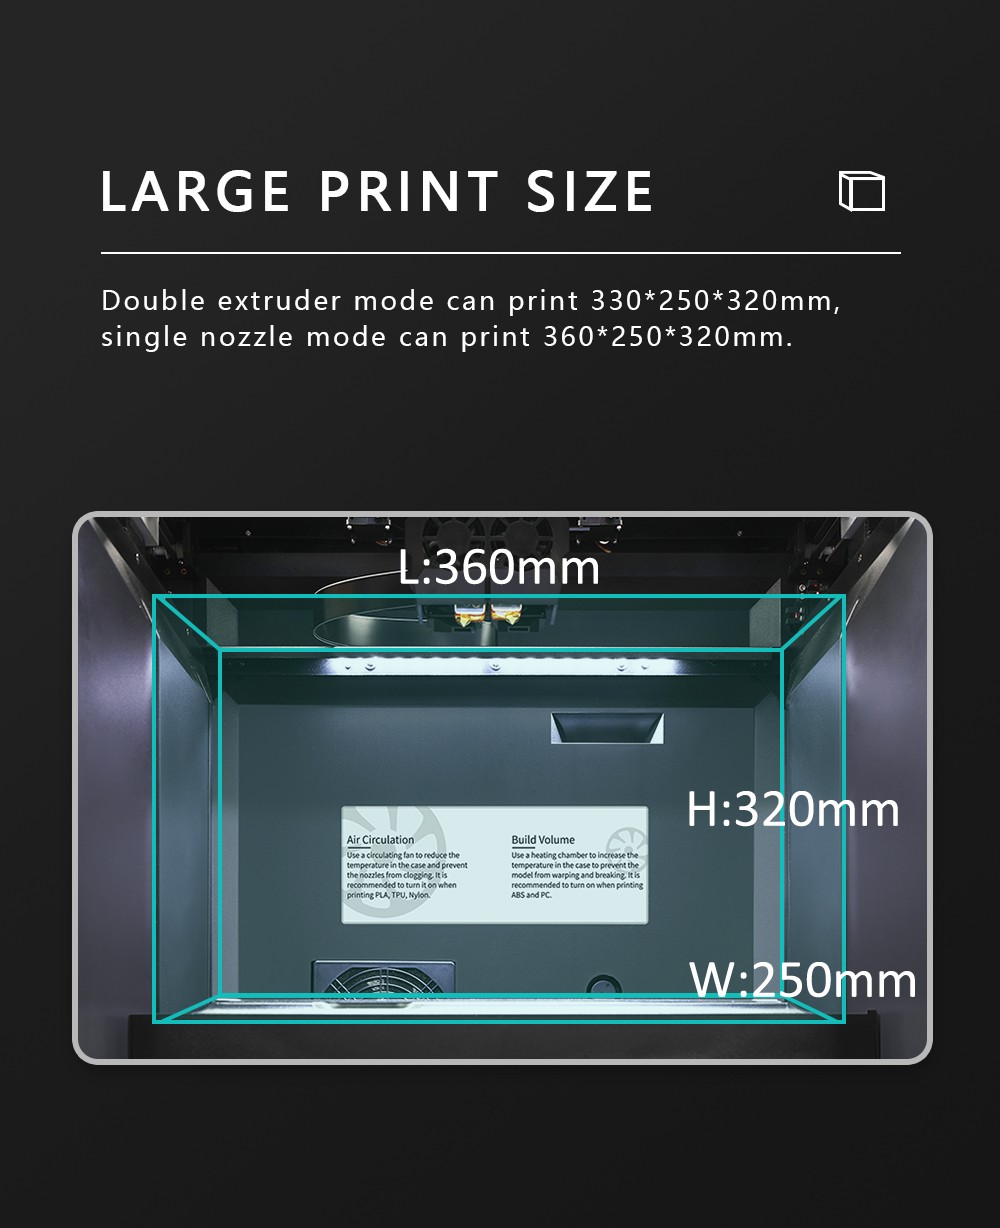 TECNOLOGIA QIDI i Impressora Fast 3D Extrusora dupla Impressão rápida 360x250x320mm Tamanho de impressão